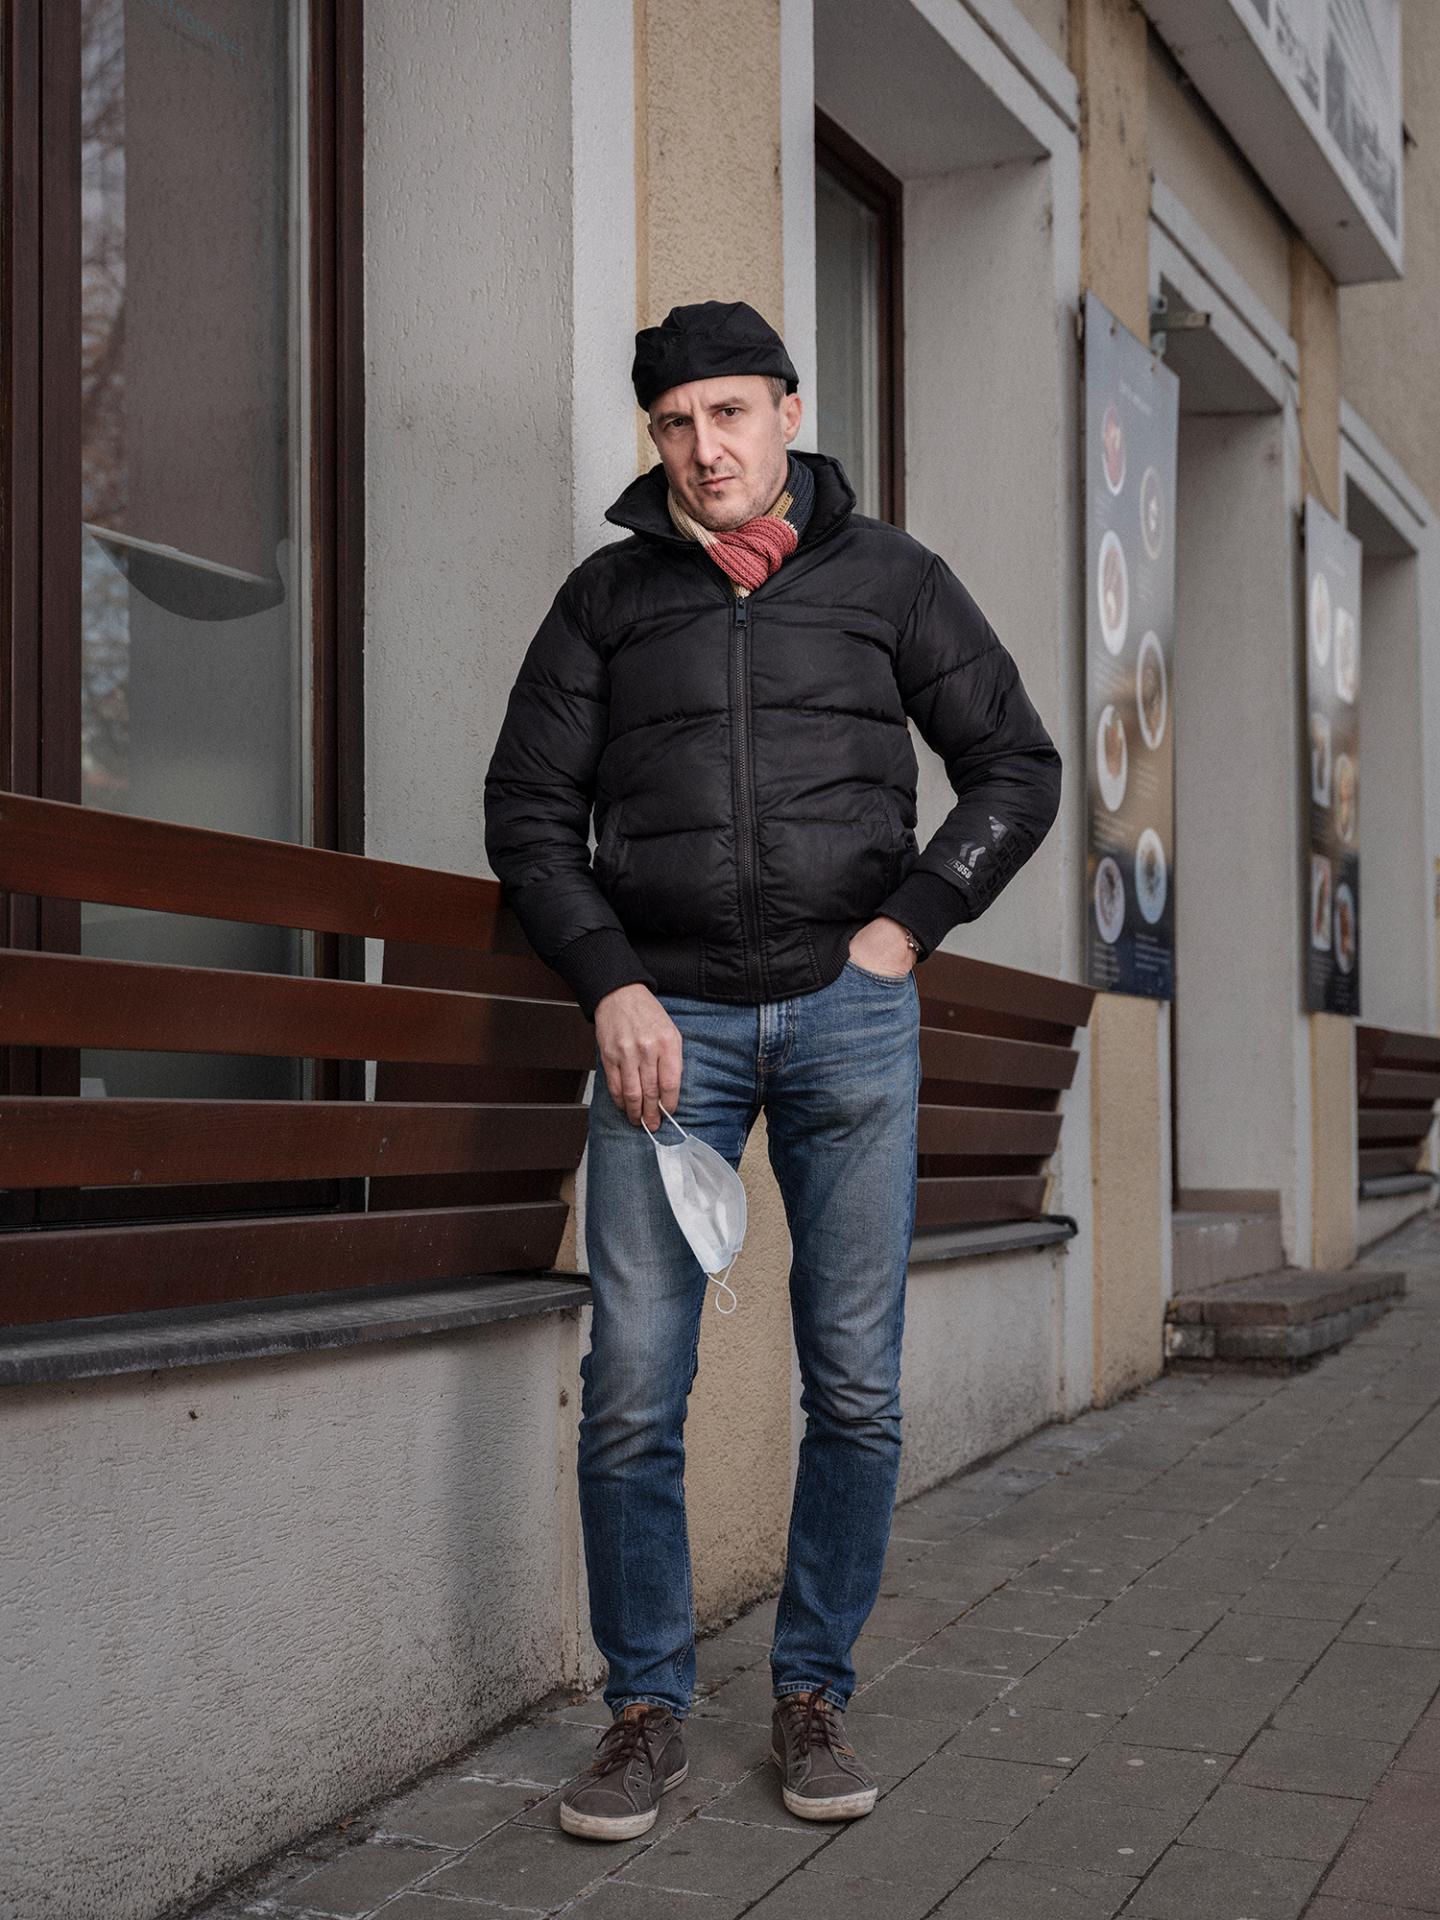 Prevádzkovateľ reštaurácie Zelený Rodrigéz Viktor Nagy zavrel reštauráciu ešte minulý rok. Teraz pracuje v .klube pod lampou.